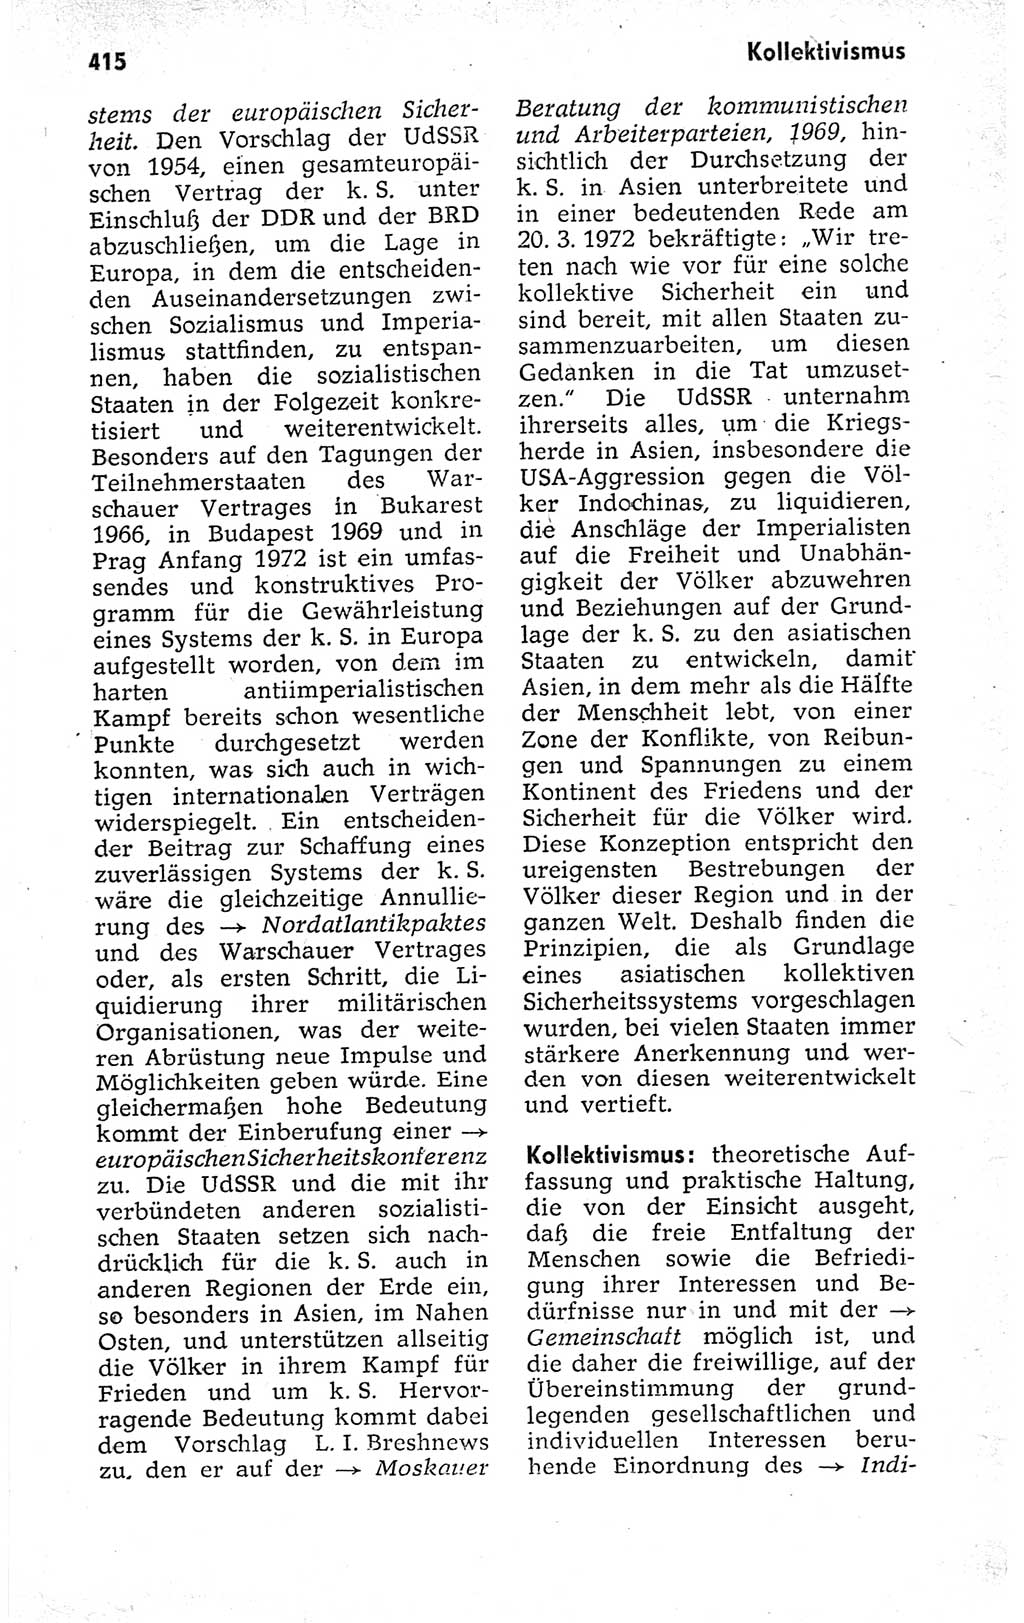 Kleines politisches Wörterbuch [Deutsche Demokratische Republik (DDR)] 1973, Seite 415 (Kl. pol. Wb. DDR 1973, S. 415)